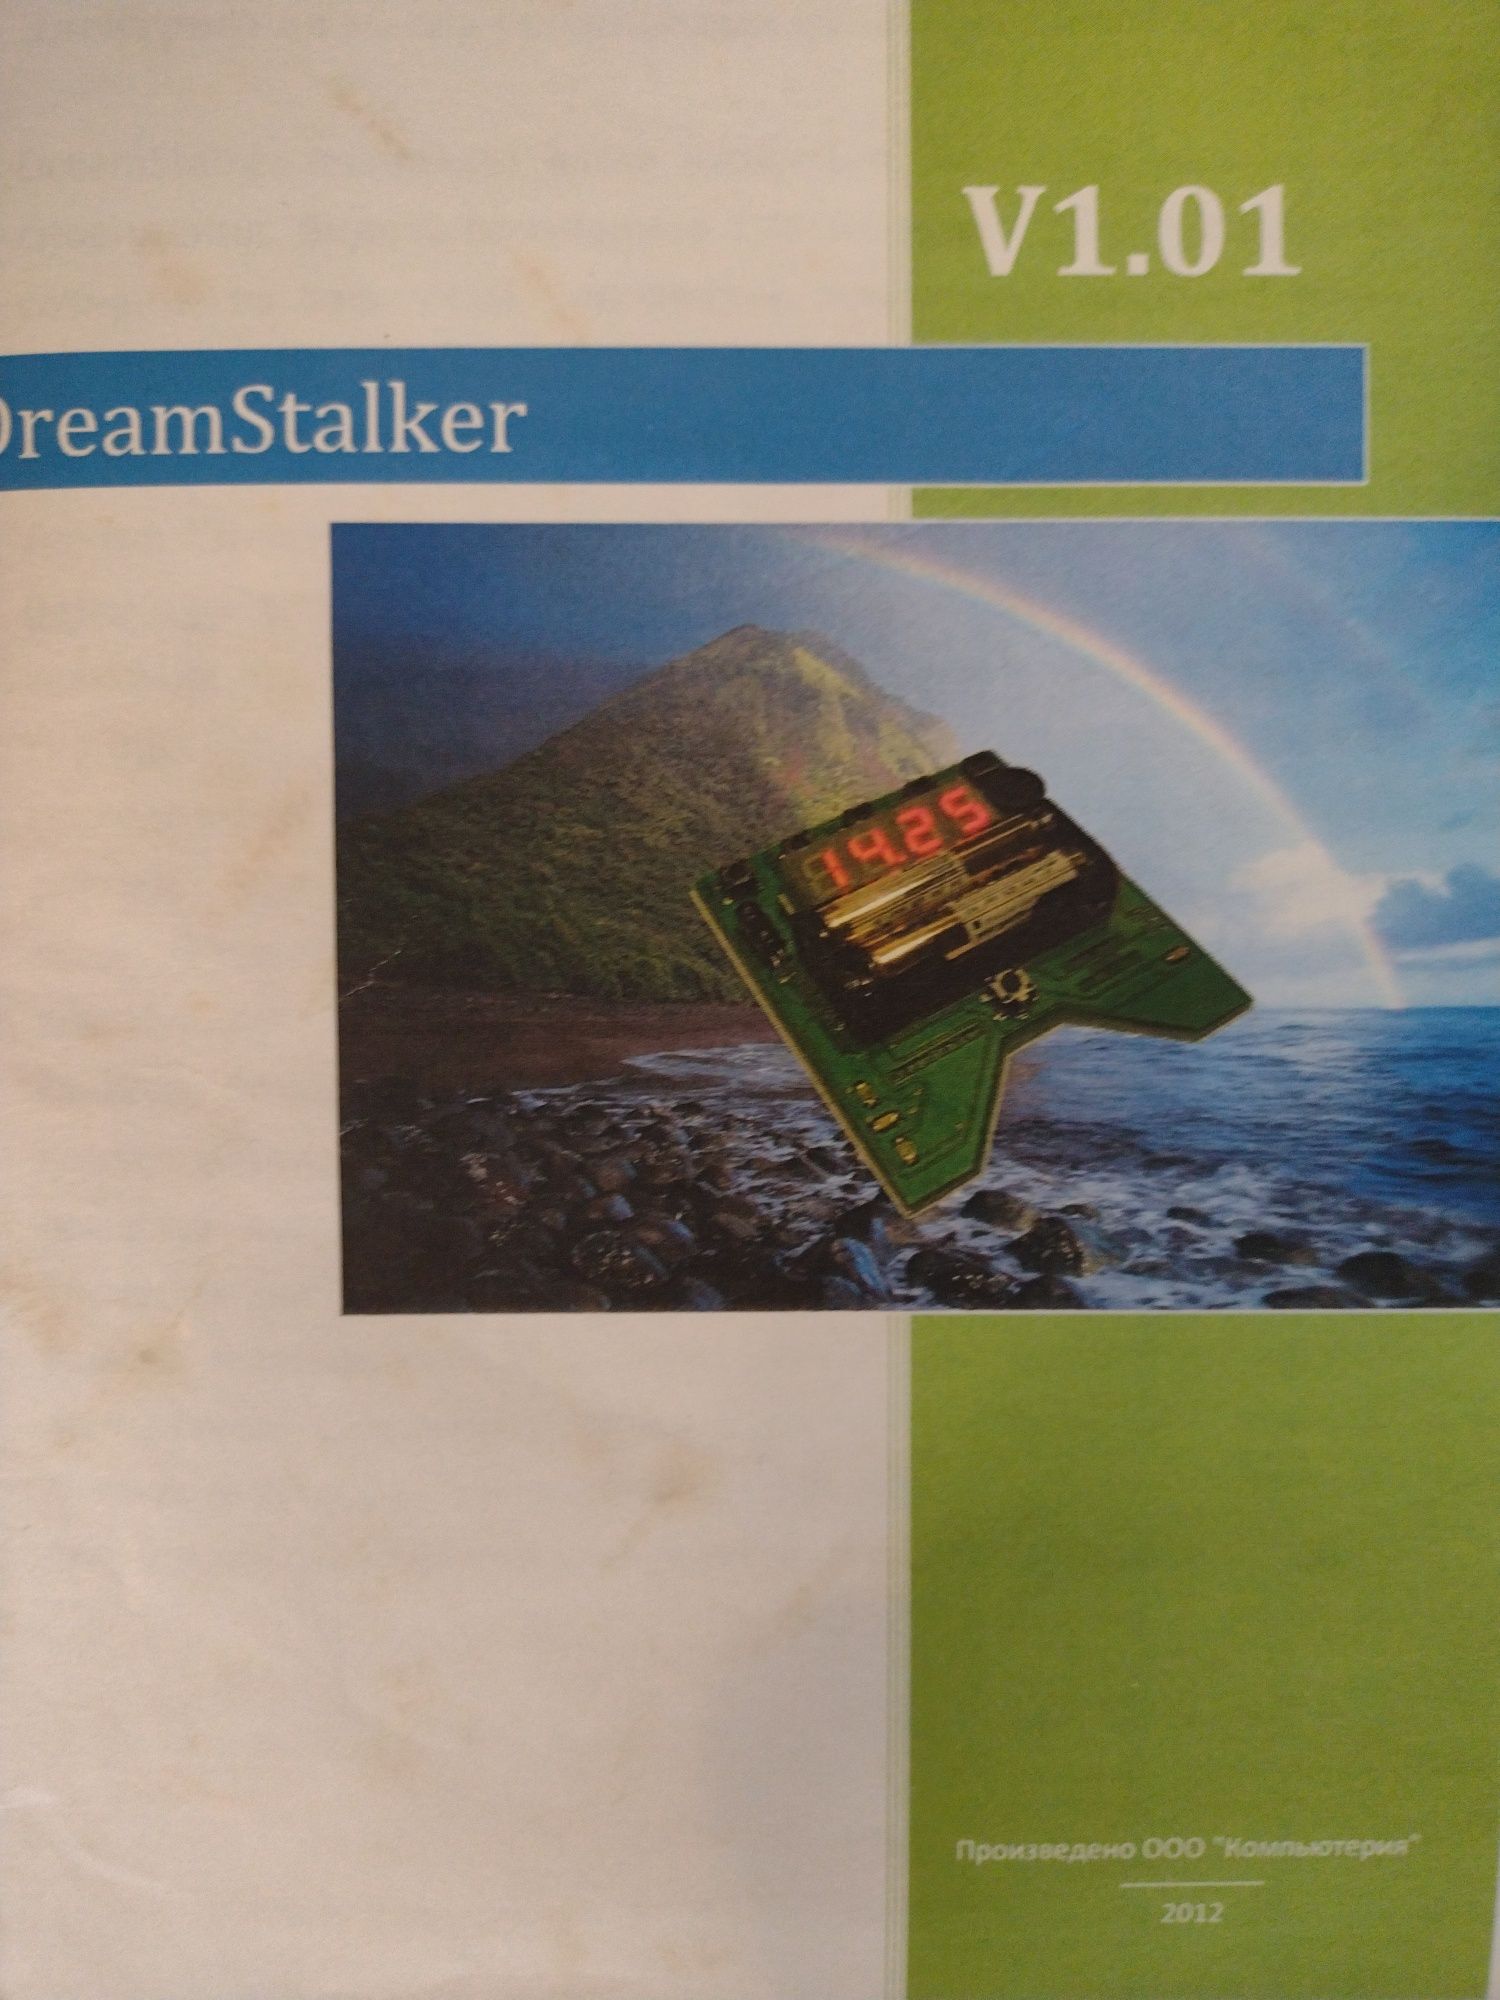 Dream Stalker V1.01